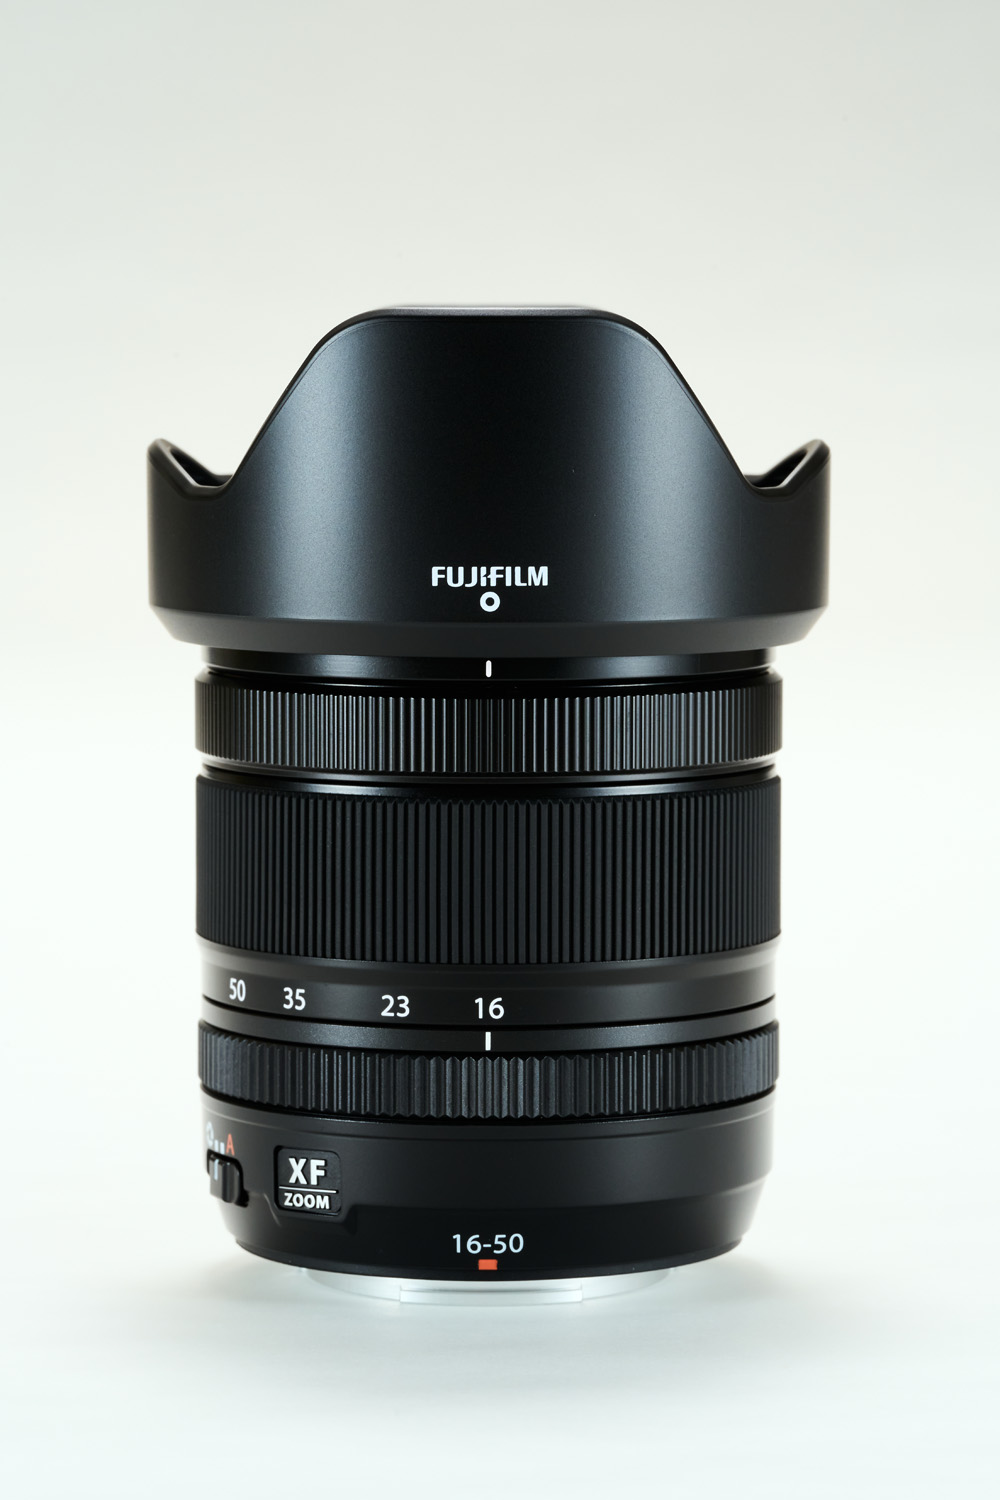 Снимок продукта с объективом Fujinon XF16-50 мм на белом фоне